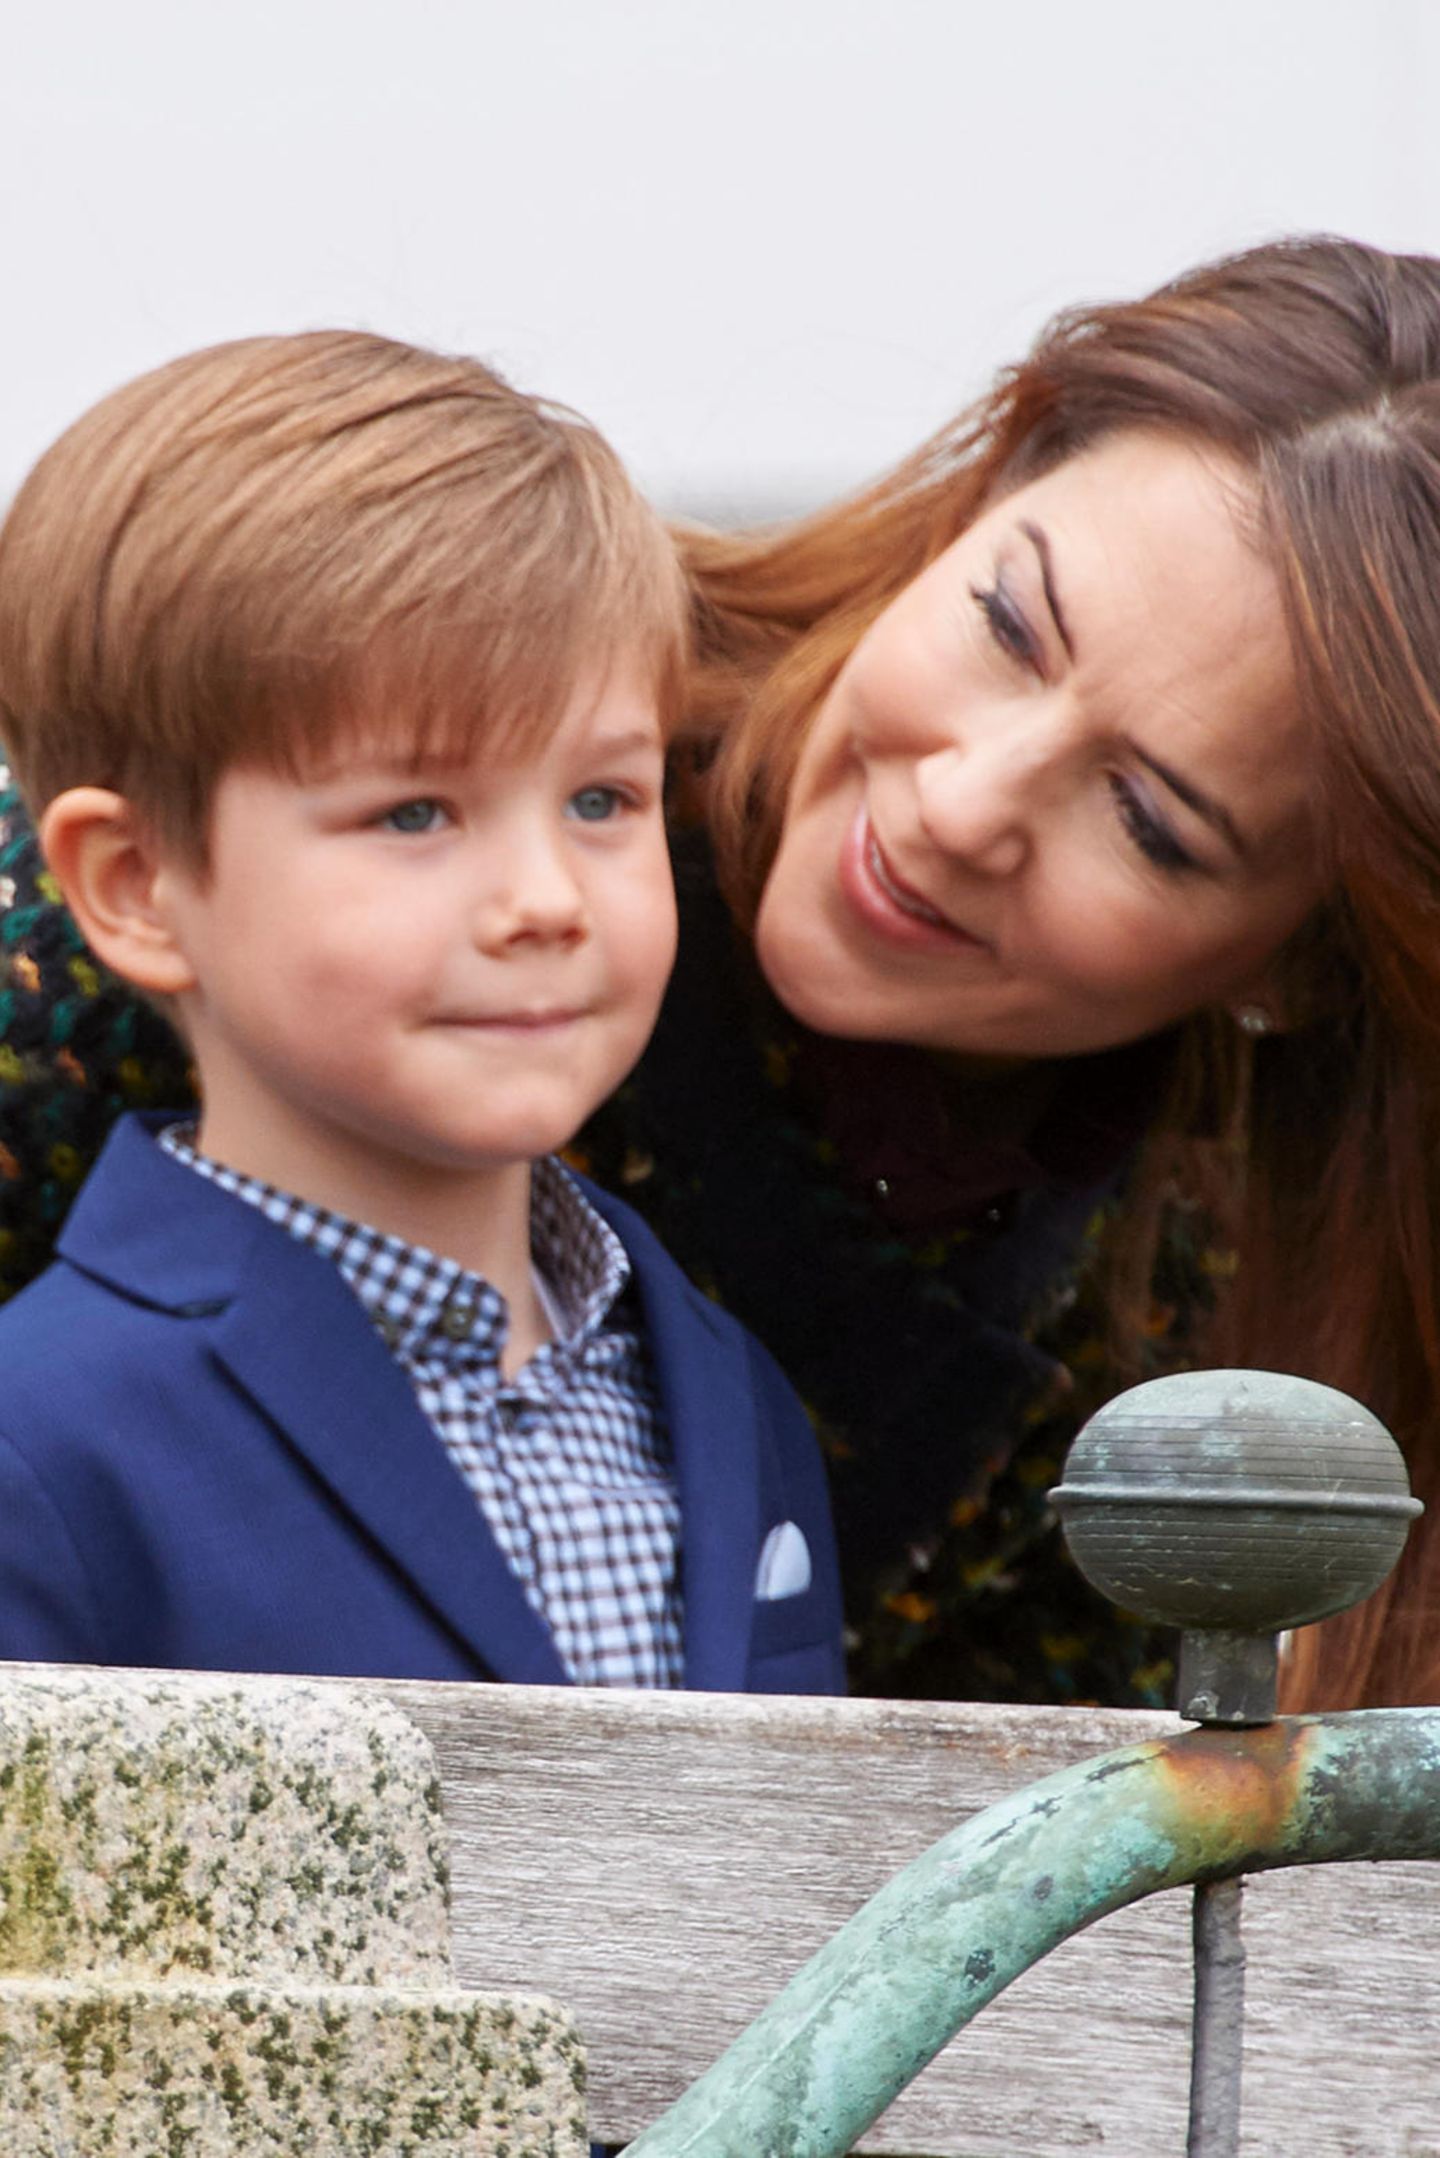 2017  So süß: Liebevoll spricht Prinzessin Mary ihrem oft etwas stilleren jüngsten Sohn zu, als sie und Vincent gemeinsam anlässlich von Königin Margrethes Geburtstag auf dem Balkon stehen.